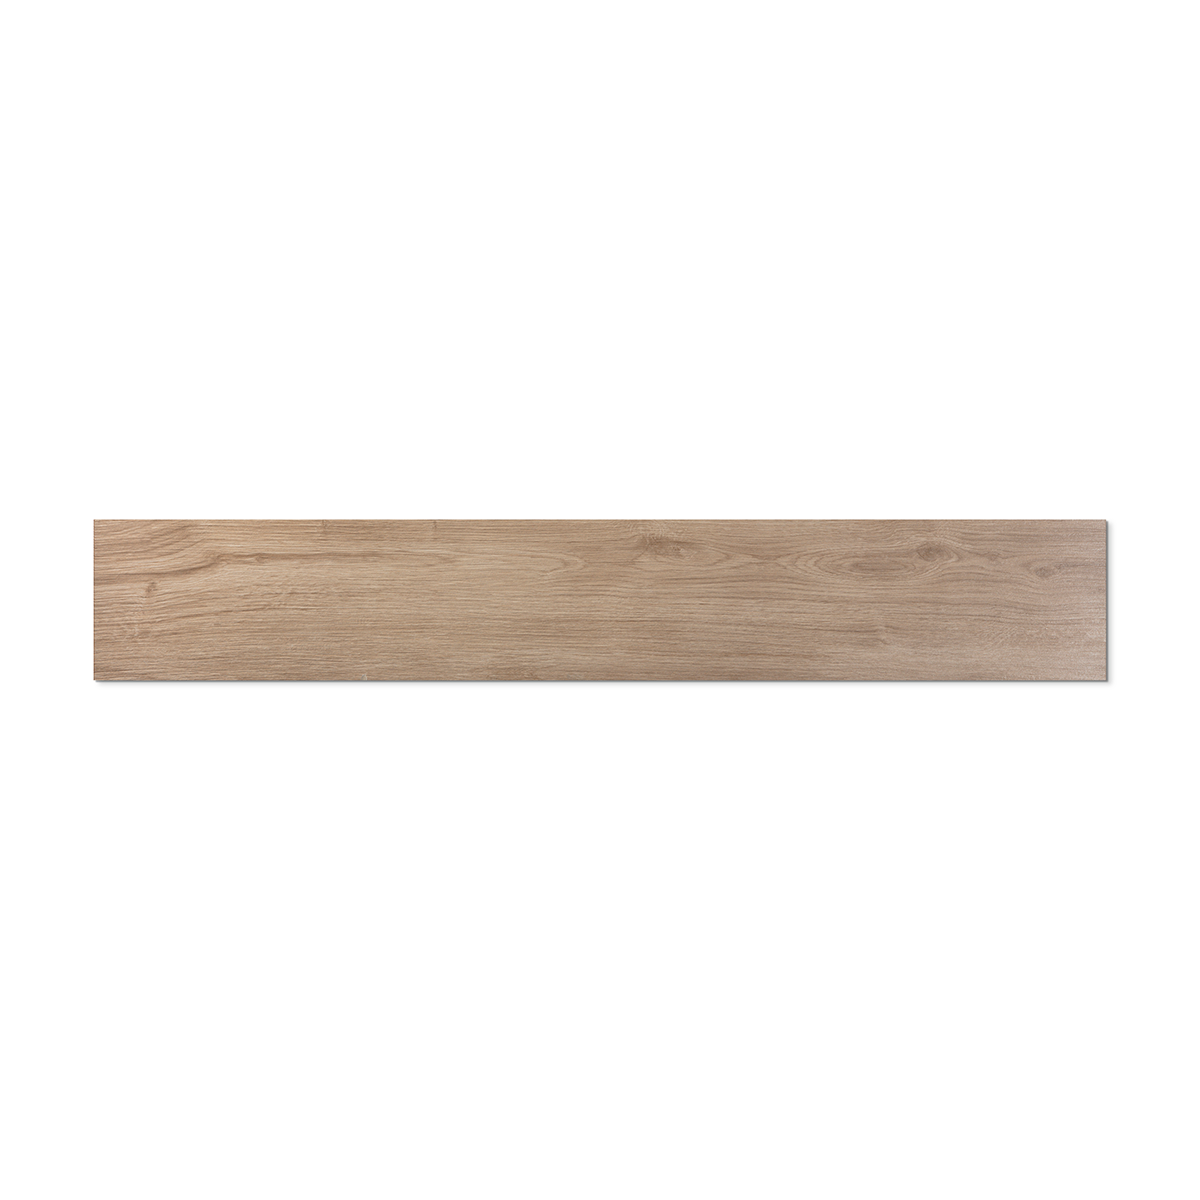 Lumber Maple 8x48 Porcelain Tile 01